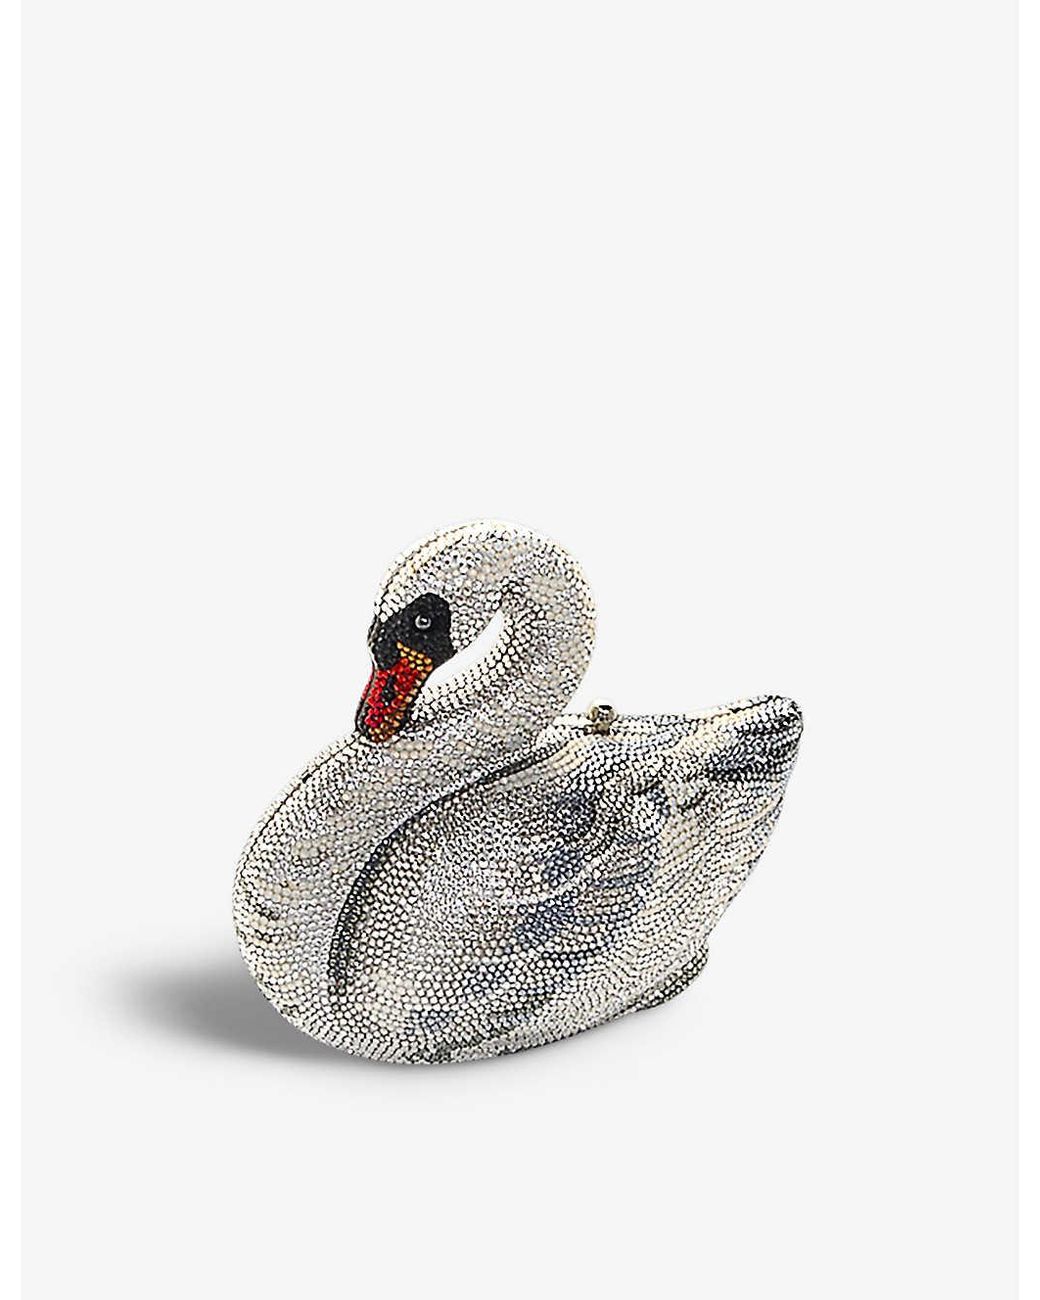  LIUZH Swan Shape Clutch Bag Evening Bag Crystal Clutch